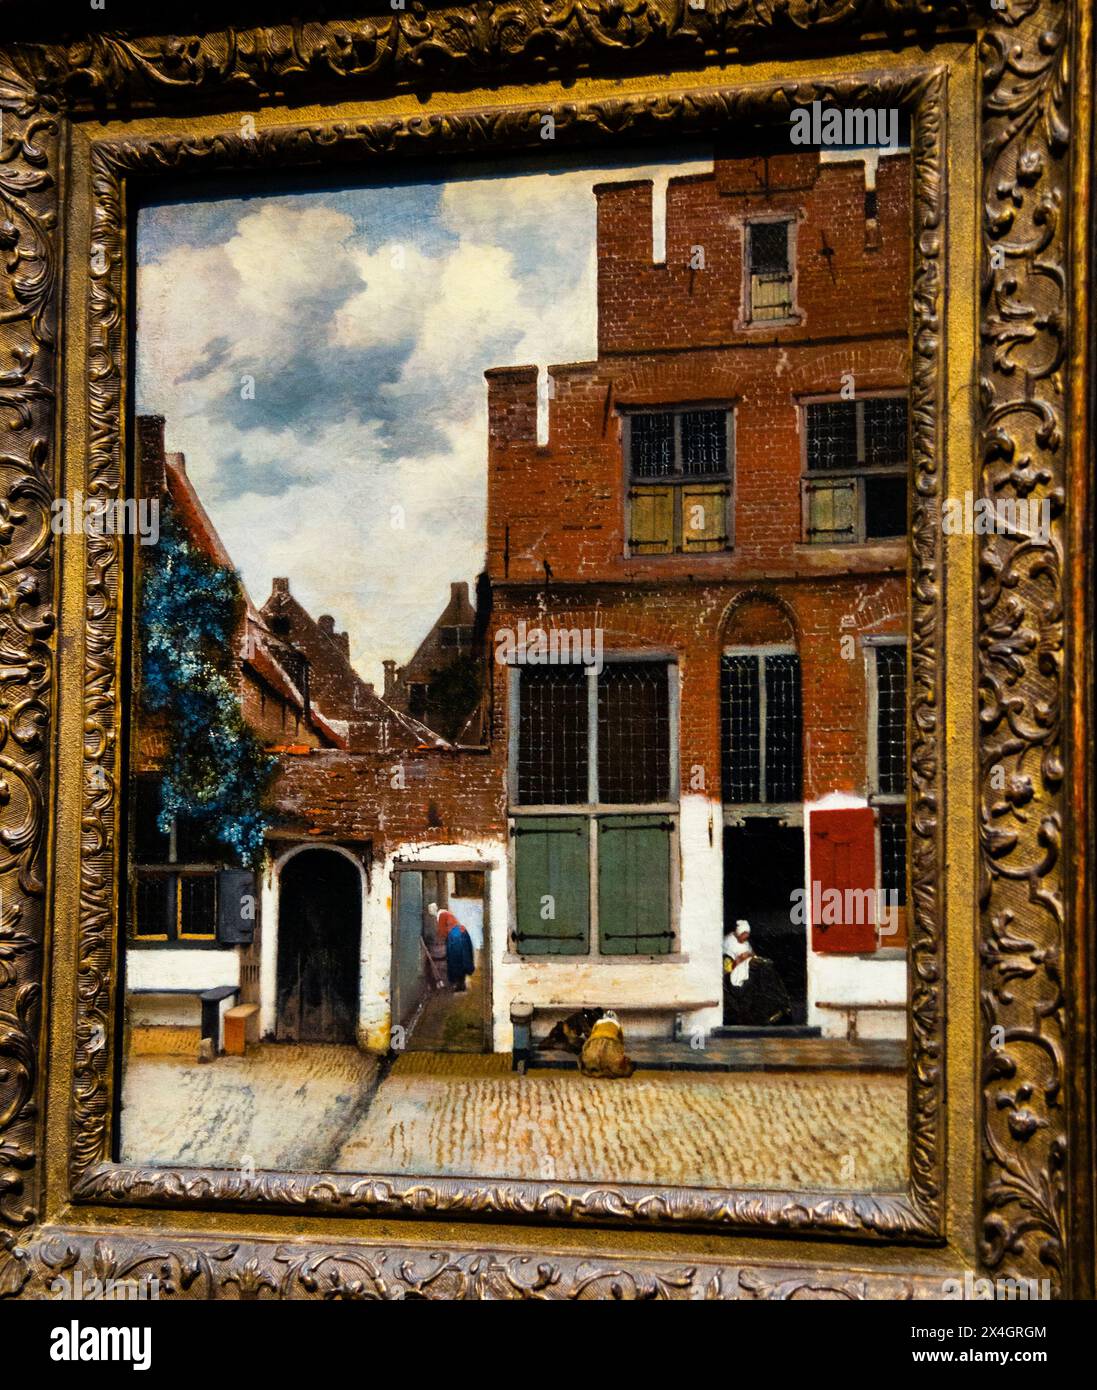 Vue de maisons à Delft, connue sous le nom de 'la petite rue', Johannes Vermeer, Rijksmuseum, Amsterdam, pays-Bas. Banque D'Images